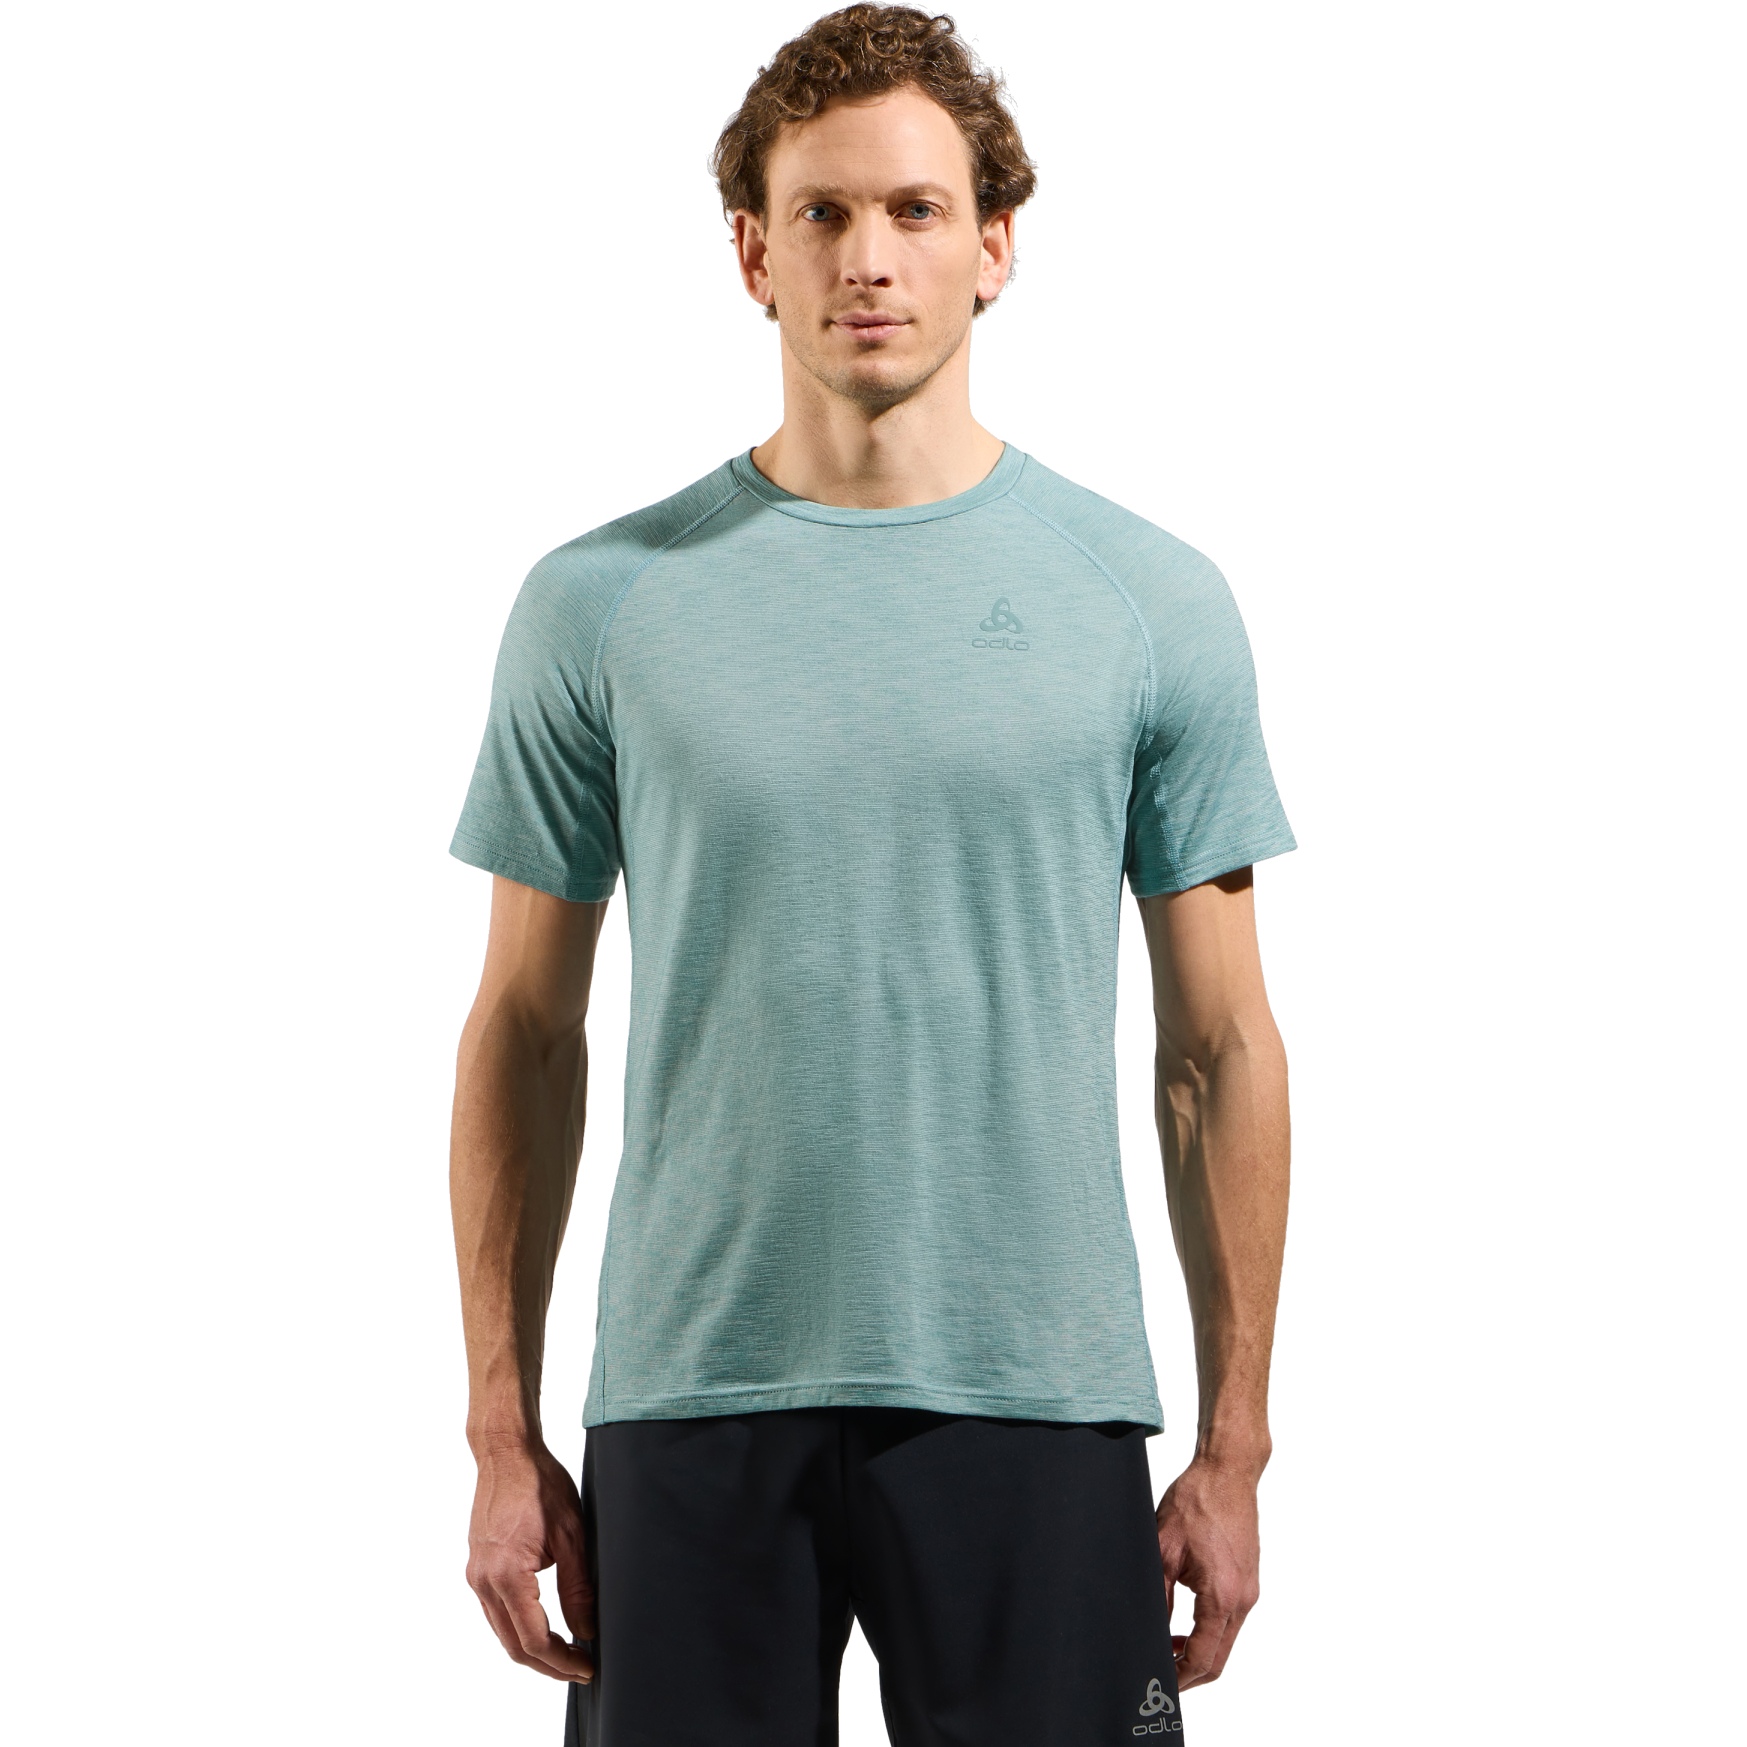 Produktbild von Odlo X-Alp Performance Wool 115 Trailrunning-Shirt Herren - arctic melange